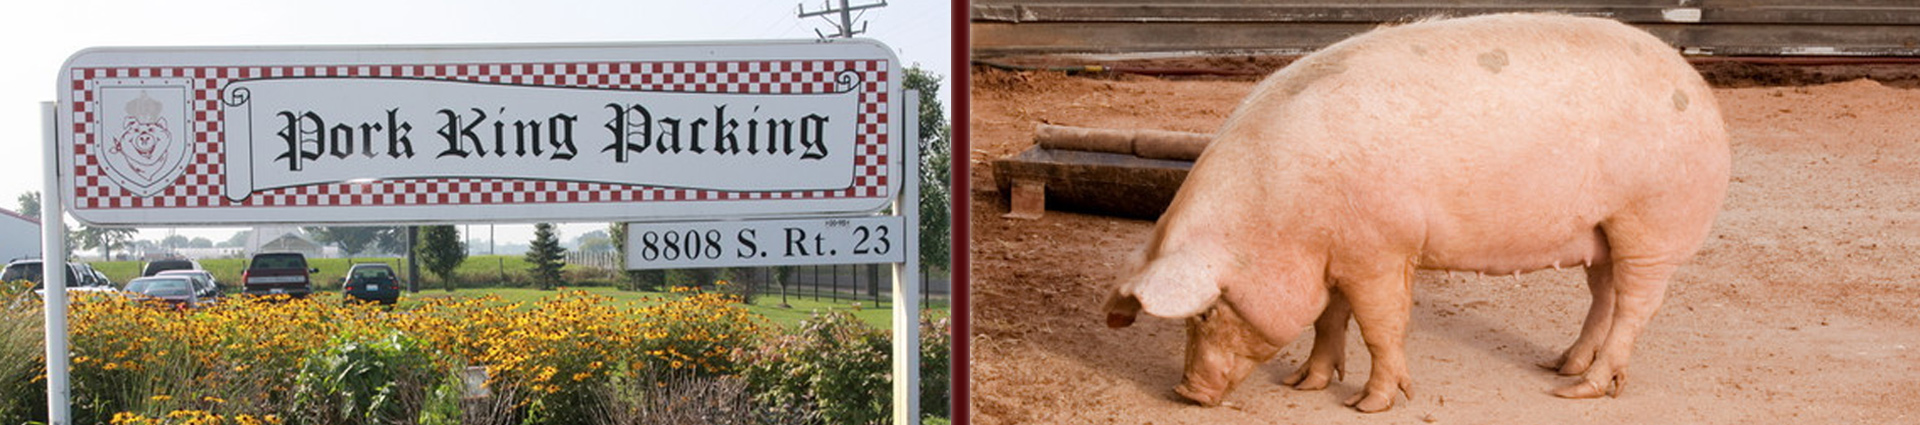 Pork King signage and pig